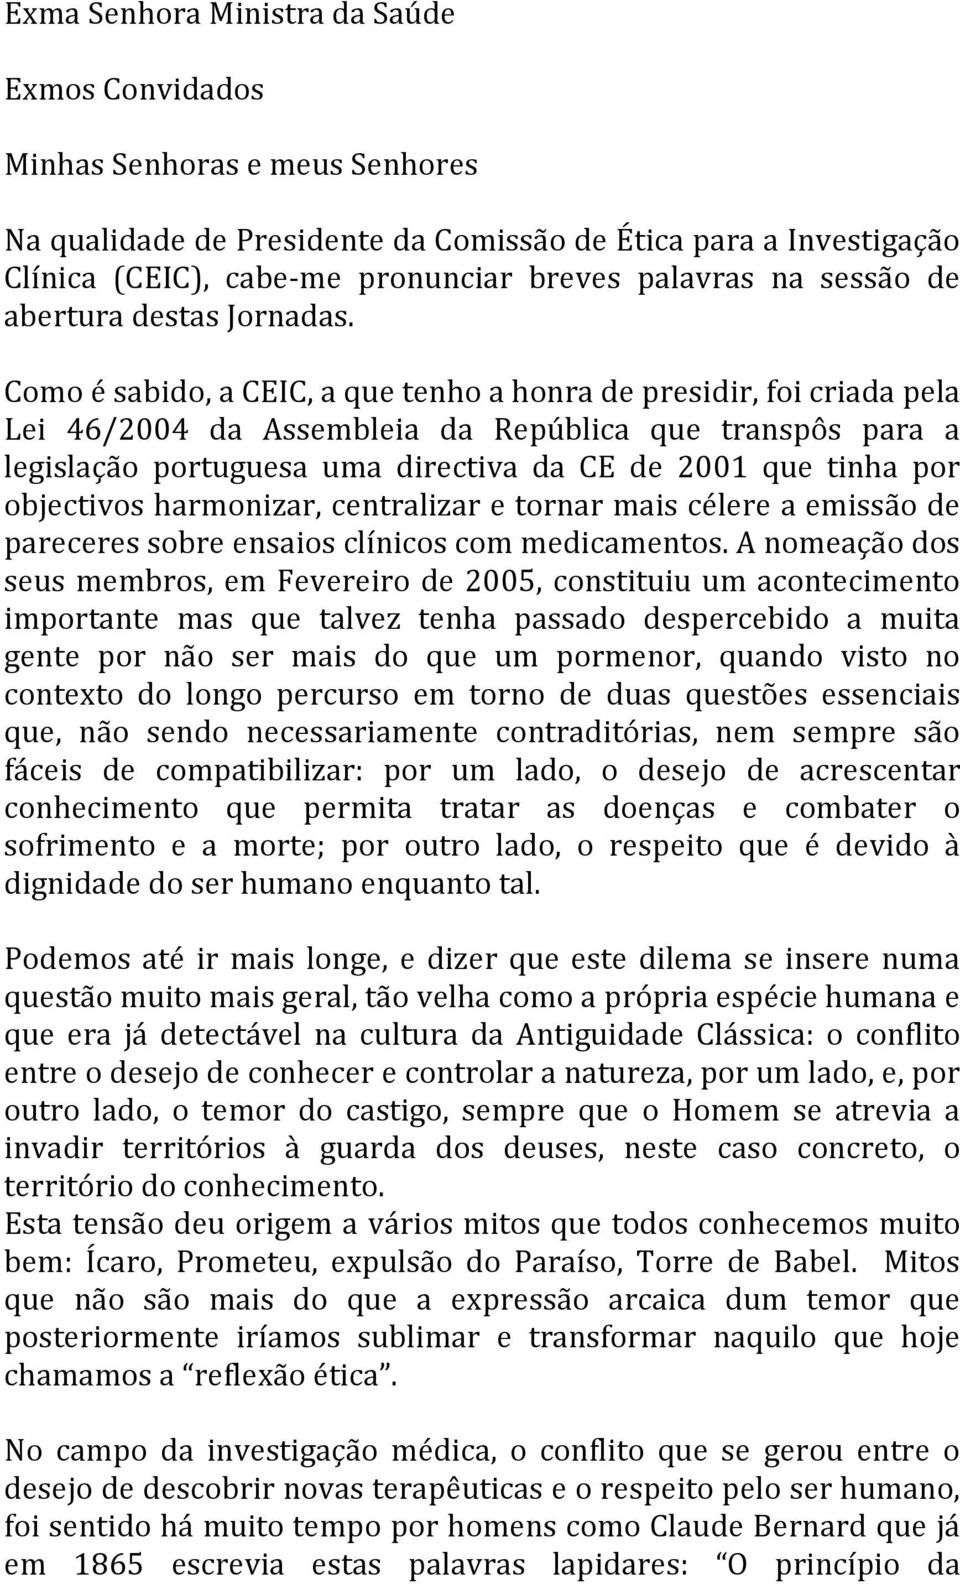 Como é sabido, a CEIC, a que tenho a honra de presidir, foi criada pela Lei 46/2004 da Assembleia da República que transpôs para a legislação portuguesa uma directiva da CE de 2001 que tinha por